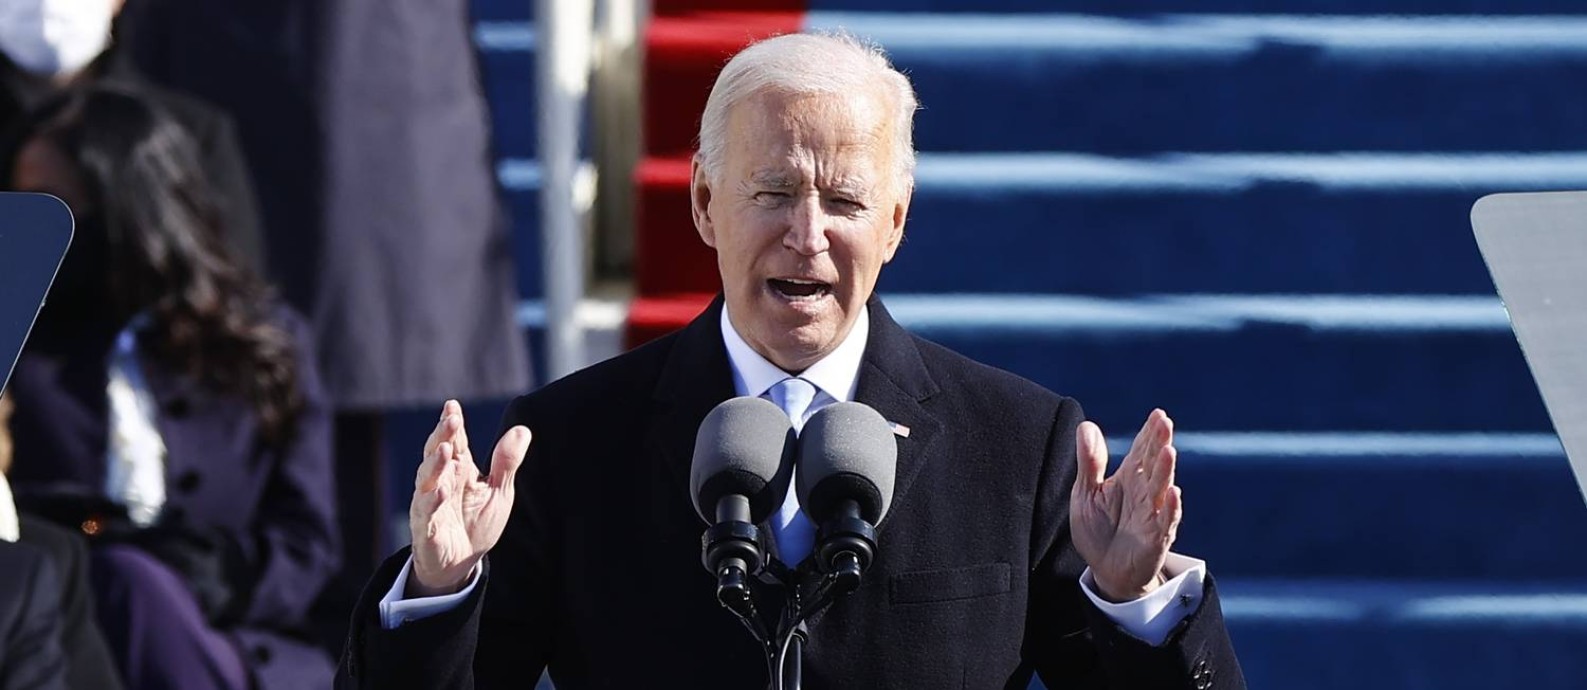 O novo presidente dos Estados Unidos, Joe biden, em seu discurso de posse Foto: JIM BOURG / REUTERS